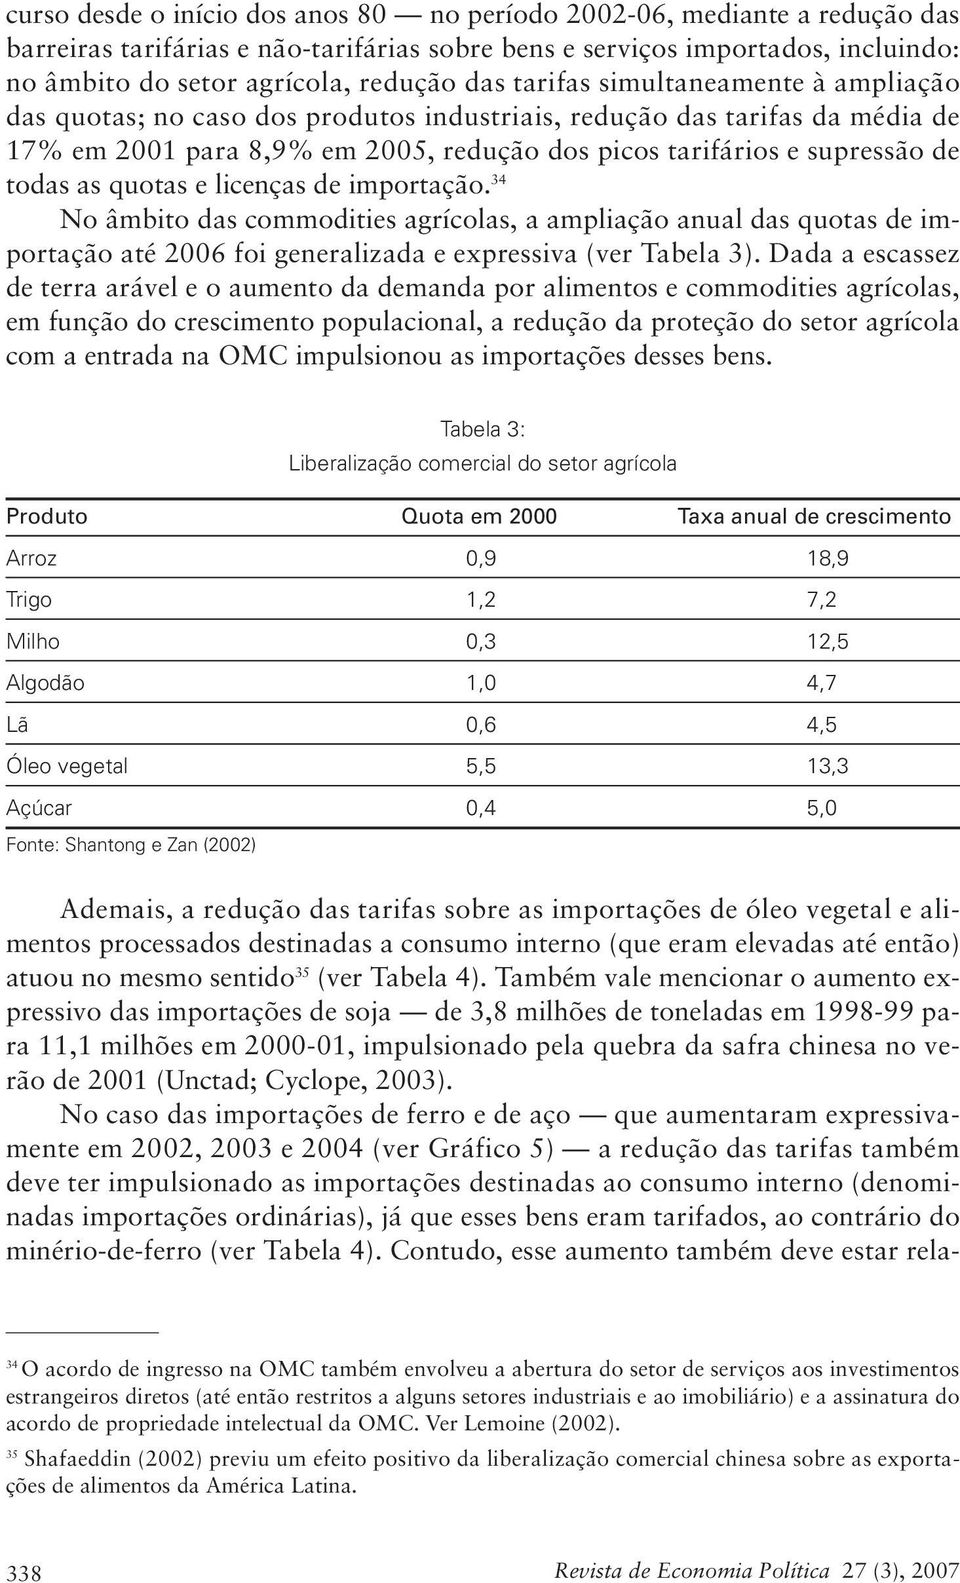 quotas e licenças de importação. 34 No âmbito das commodities agrícolas, a ampliação anual das quotas de importação até 2006 foi generalizada e expressiva (ver Tabela 3).